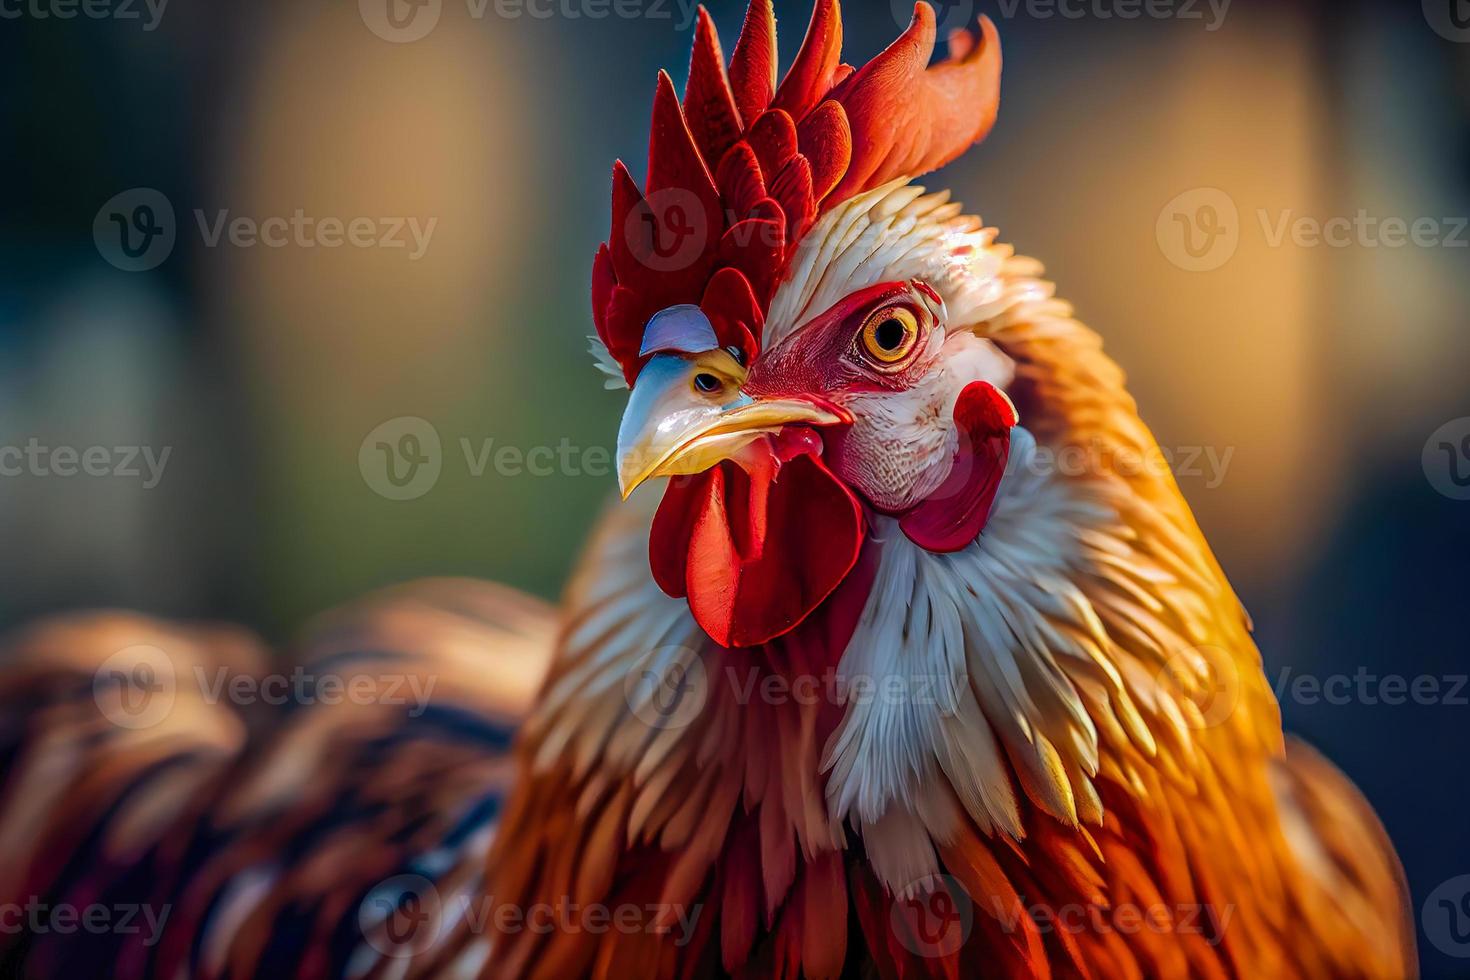 primer plano de un pollo en una granja, en un entorno natural. foto